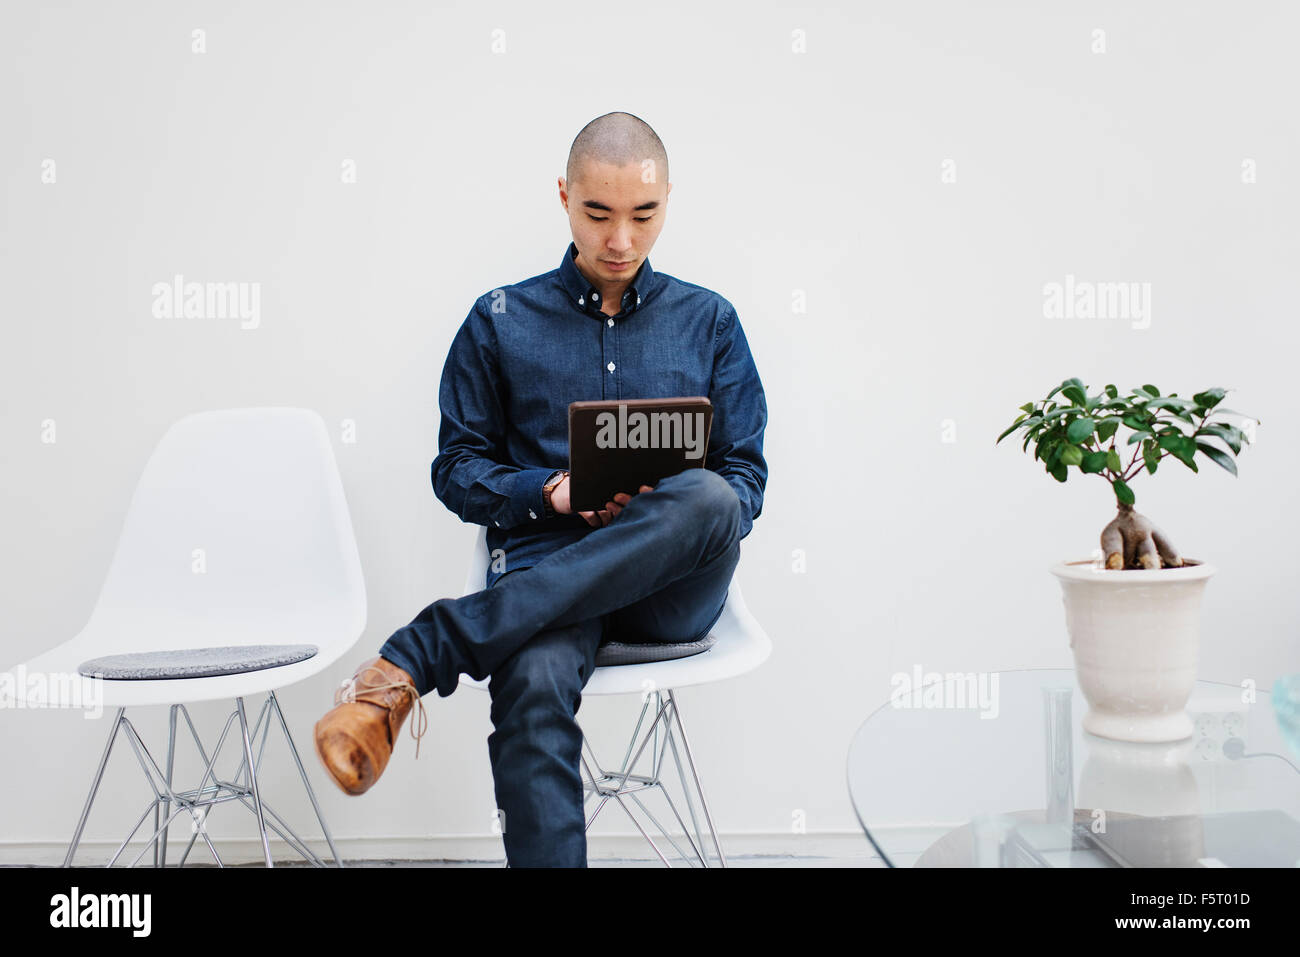 Suecia, Freelancer sentado con tableta digital Foto de stock